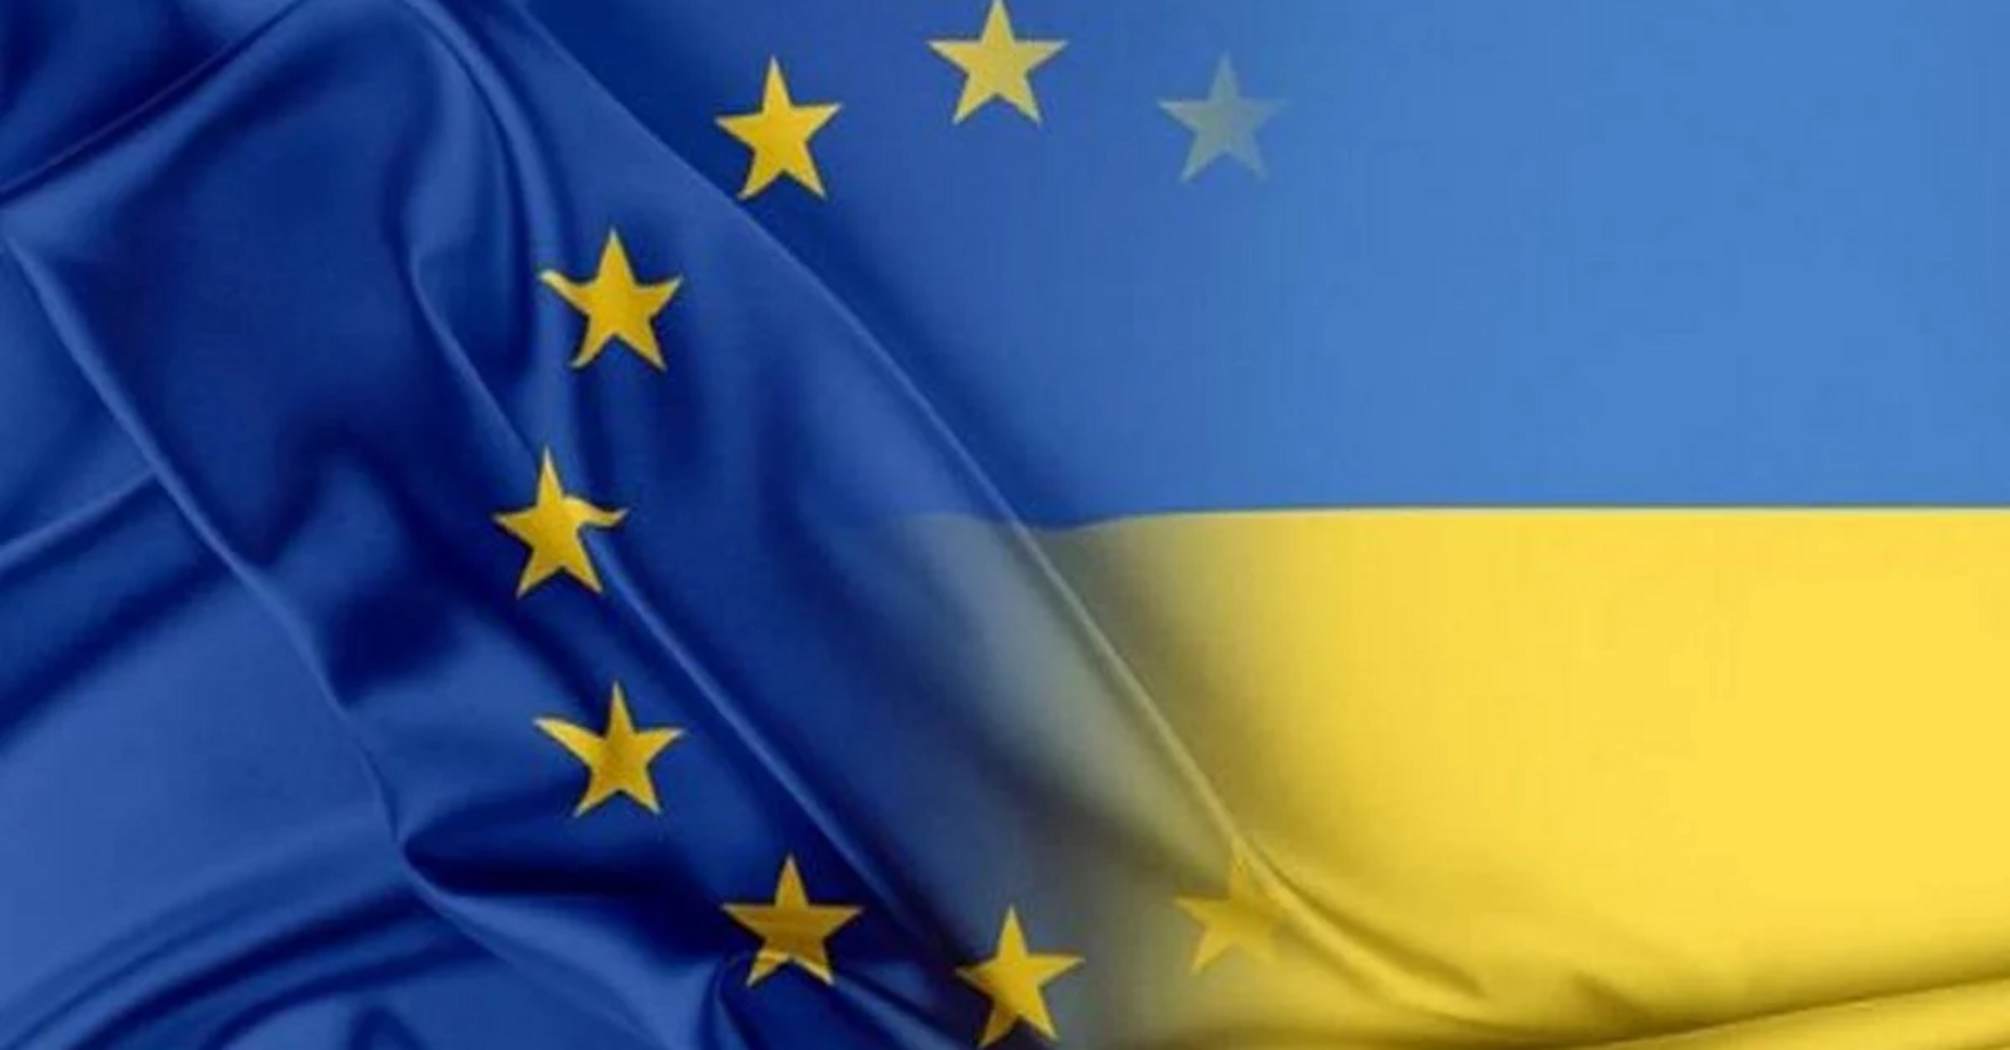 Bruksela naciska na rozpoczęcie formalnych rozmów w sprawie członkostwa Ukrainy w UE już 25 czerwca - Politico